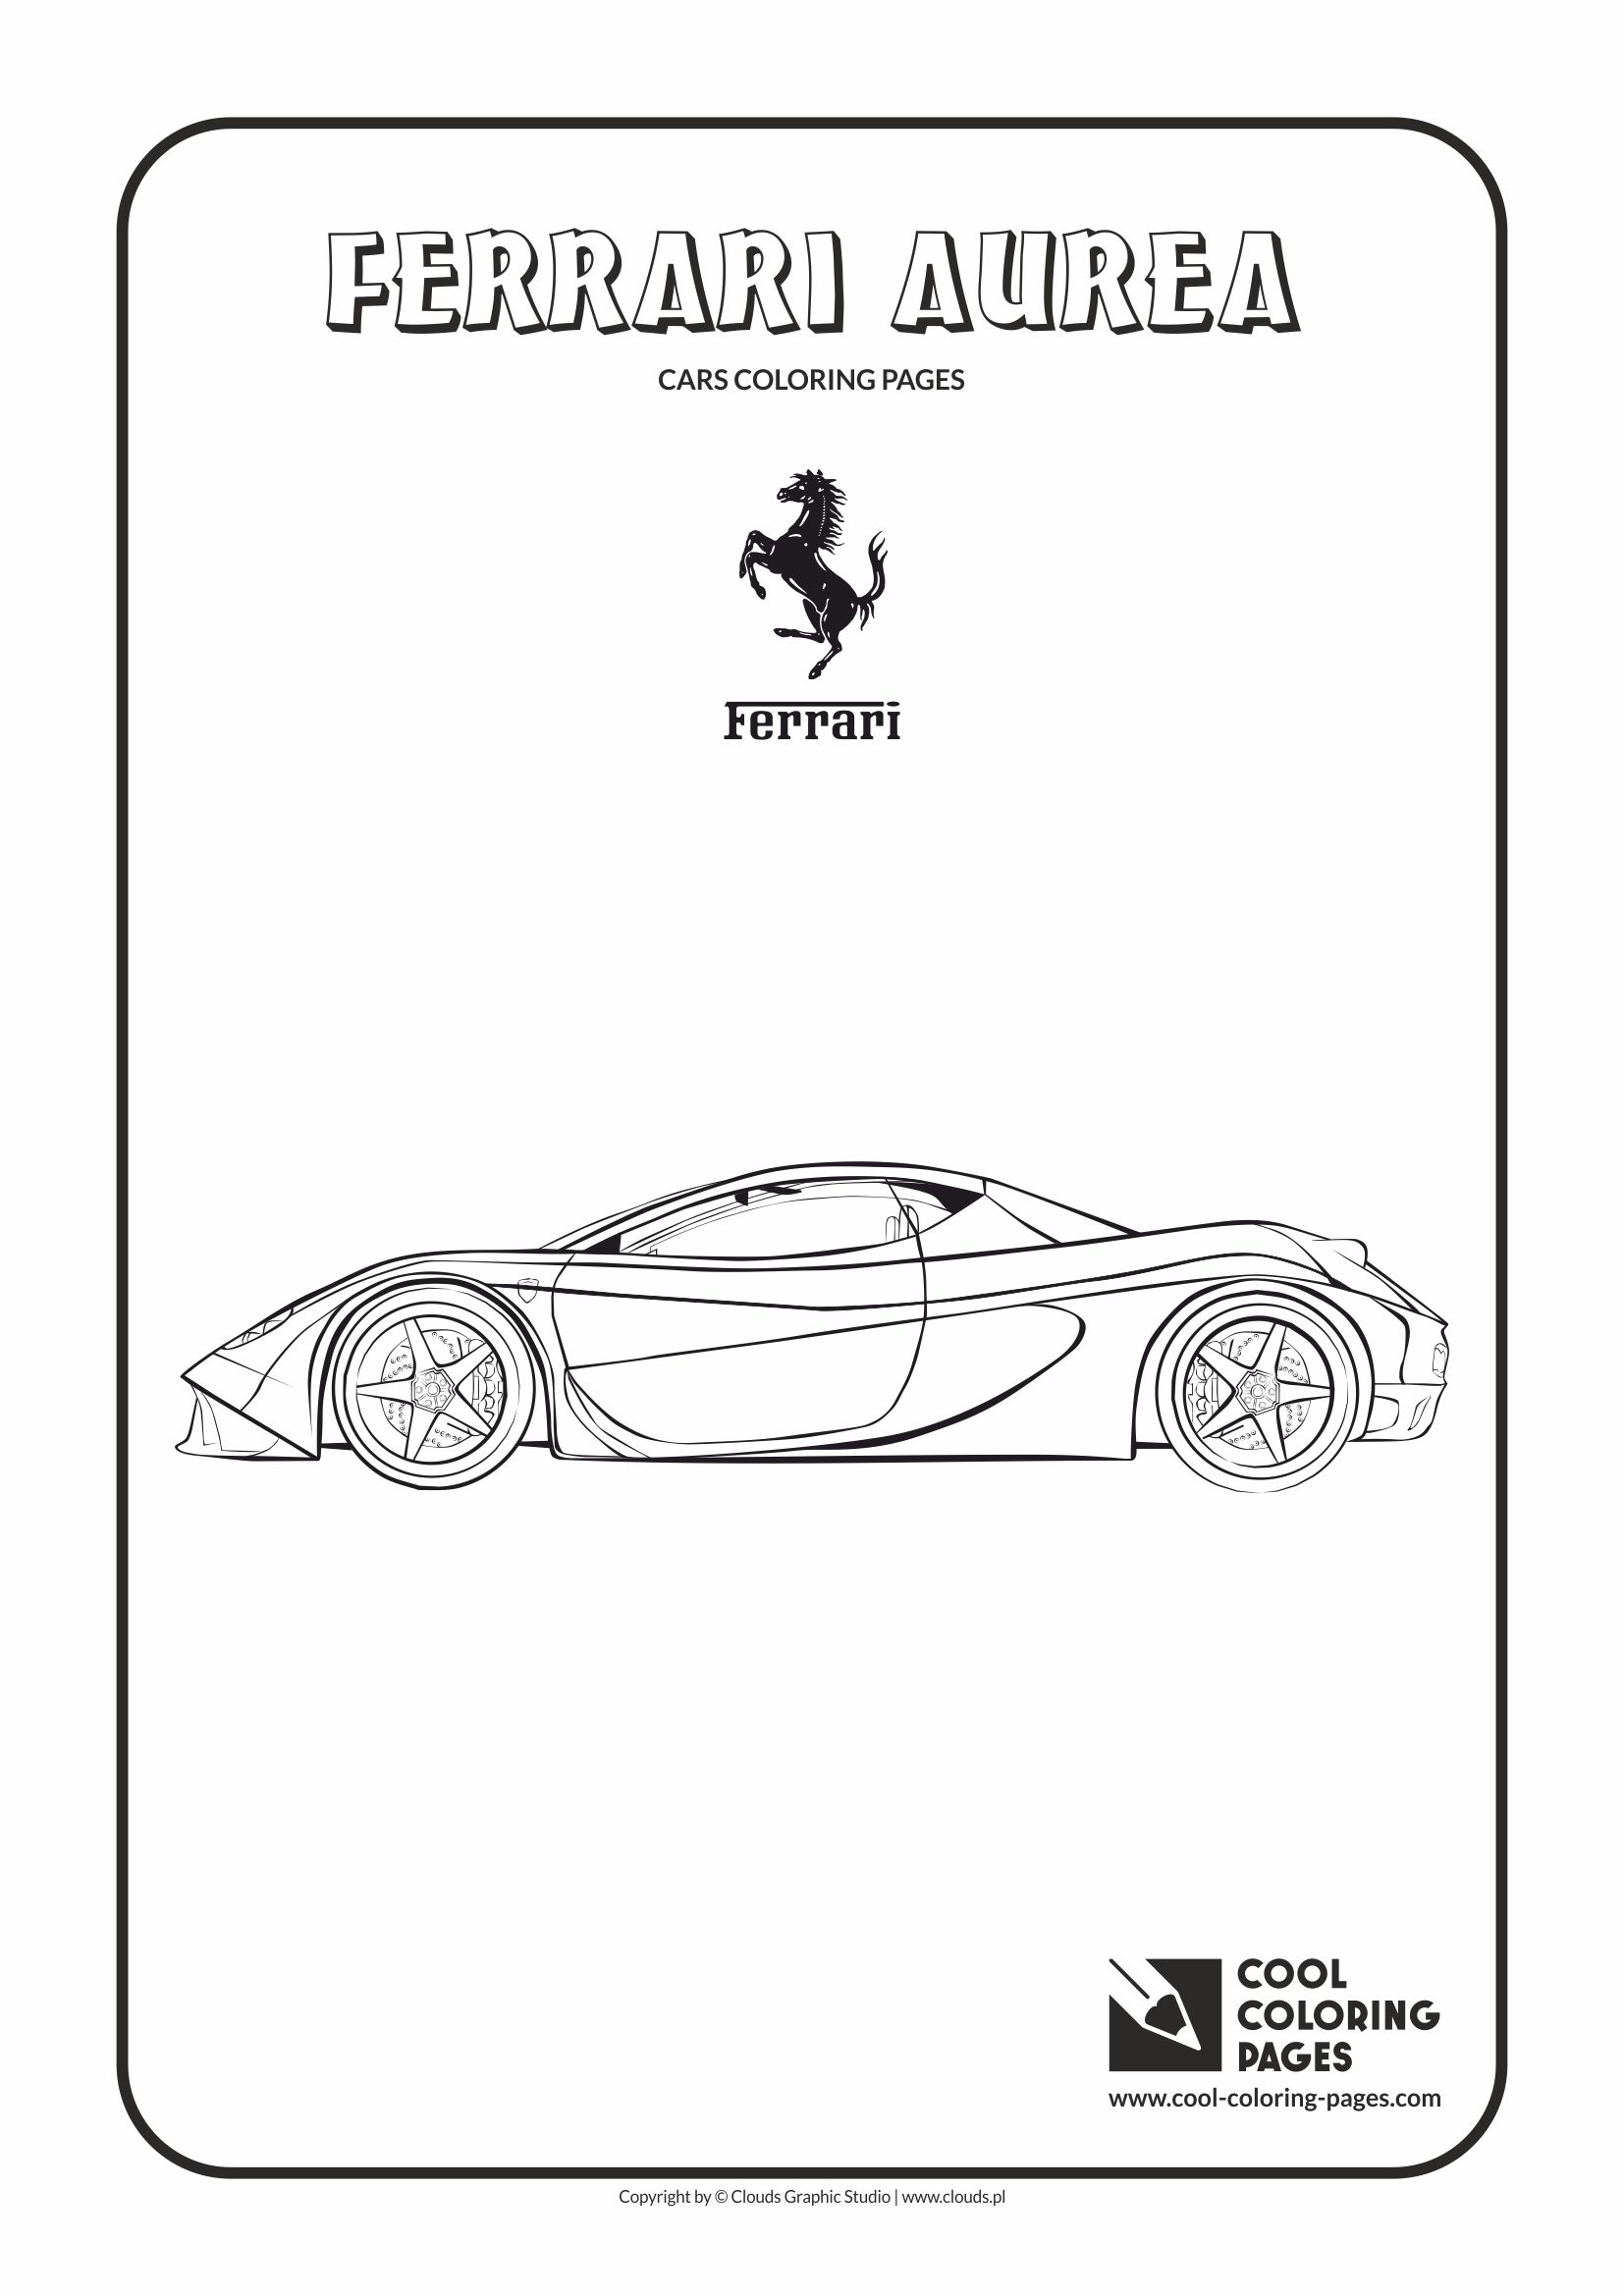 Cool Coloring Pages - Vehicles / Ferrari Aurea / Coloring page with Ferrari Aurea